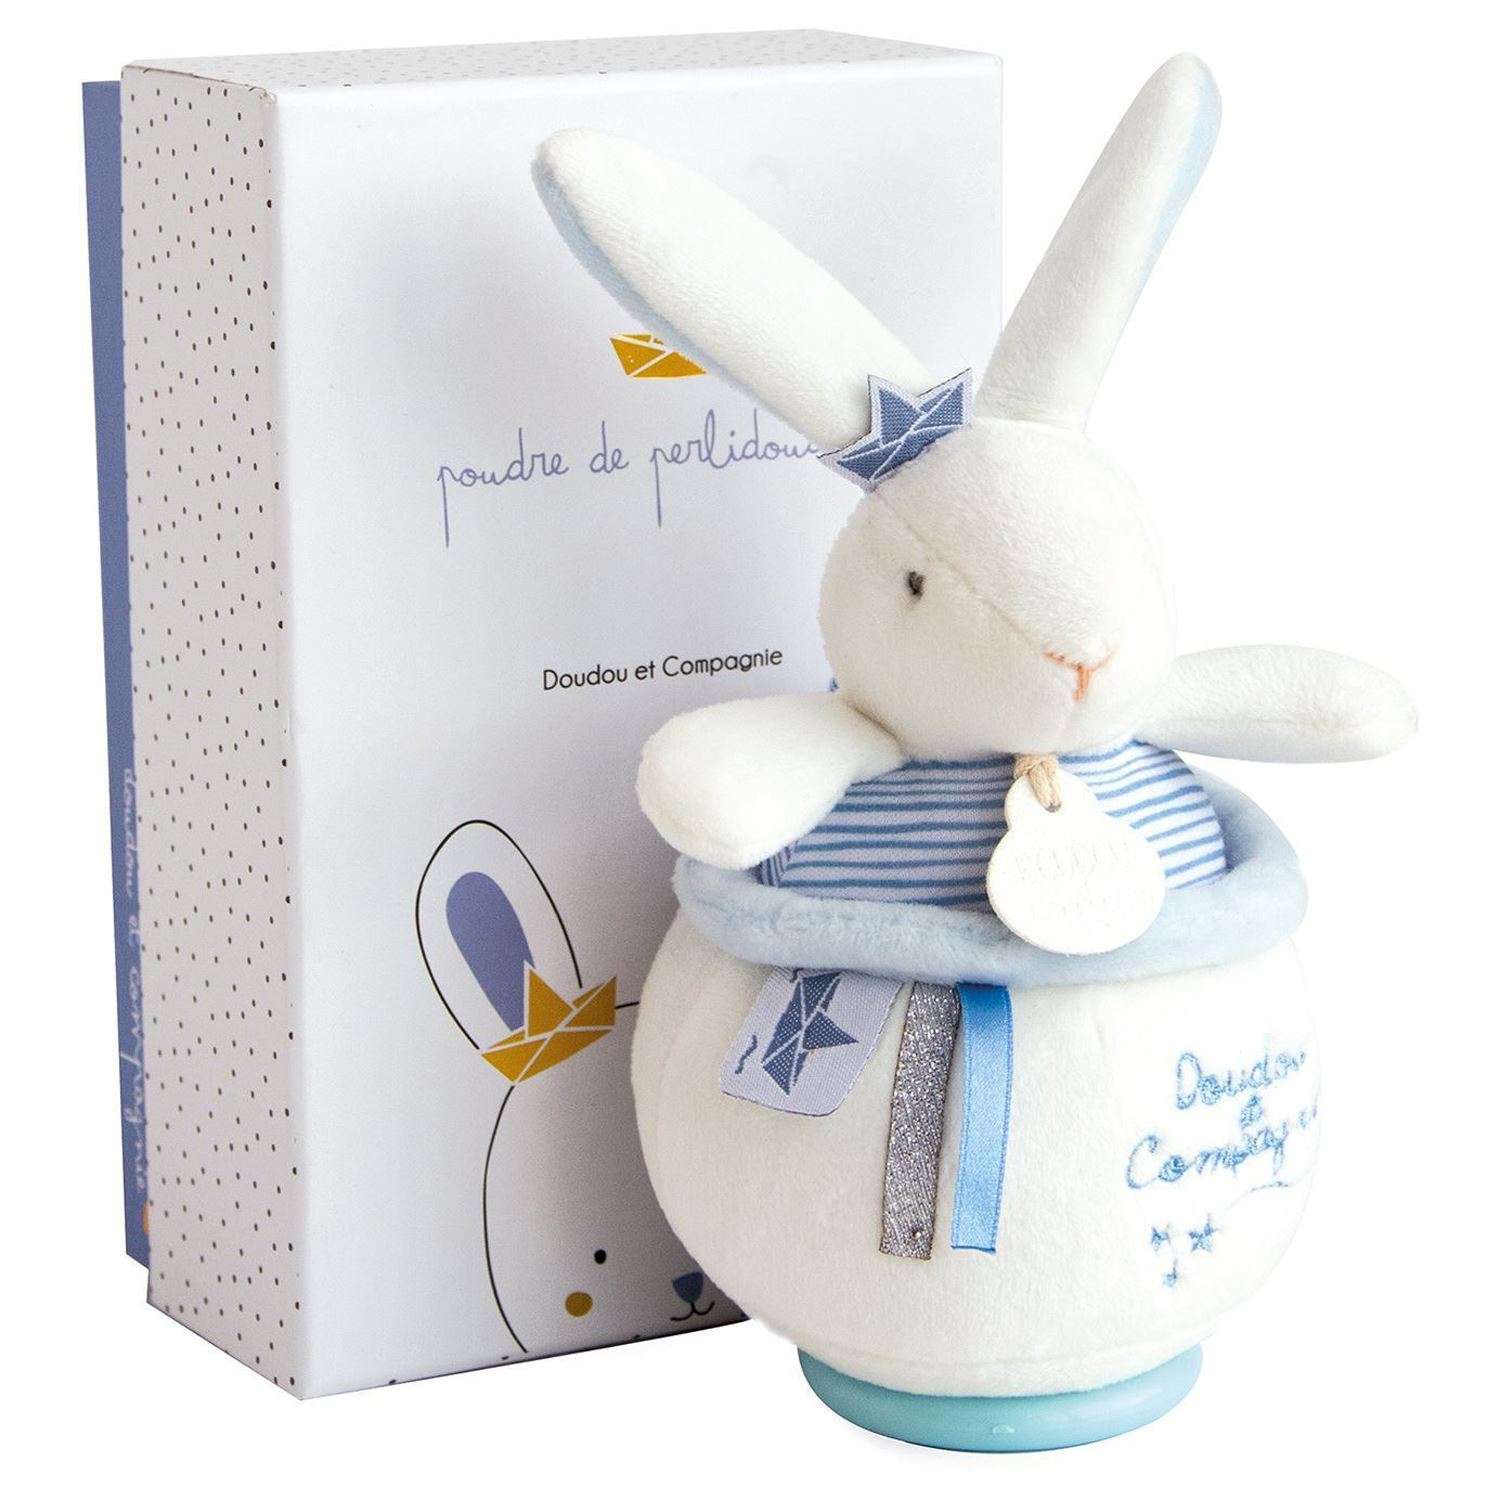 Музыкальная мягкая игрушка Doudou et compagnie  perlidoudou 19 см голубой кролик - фото 1